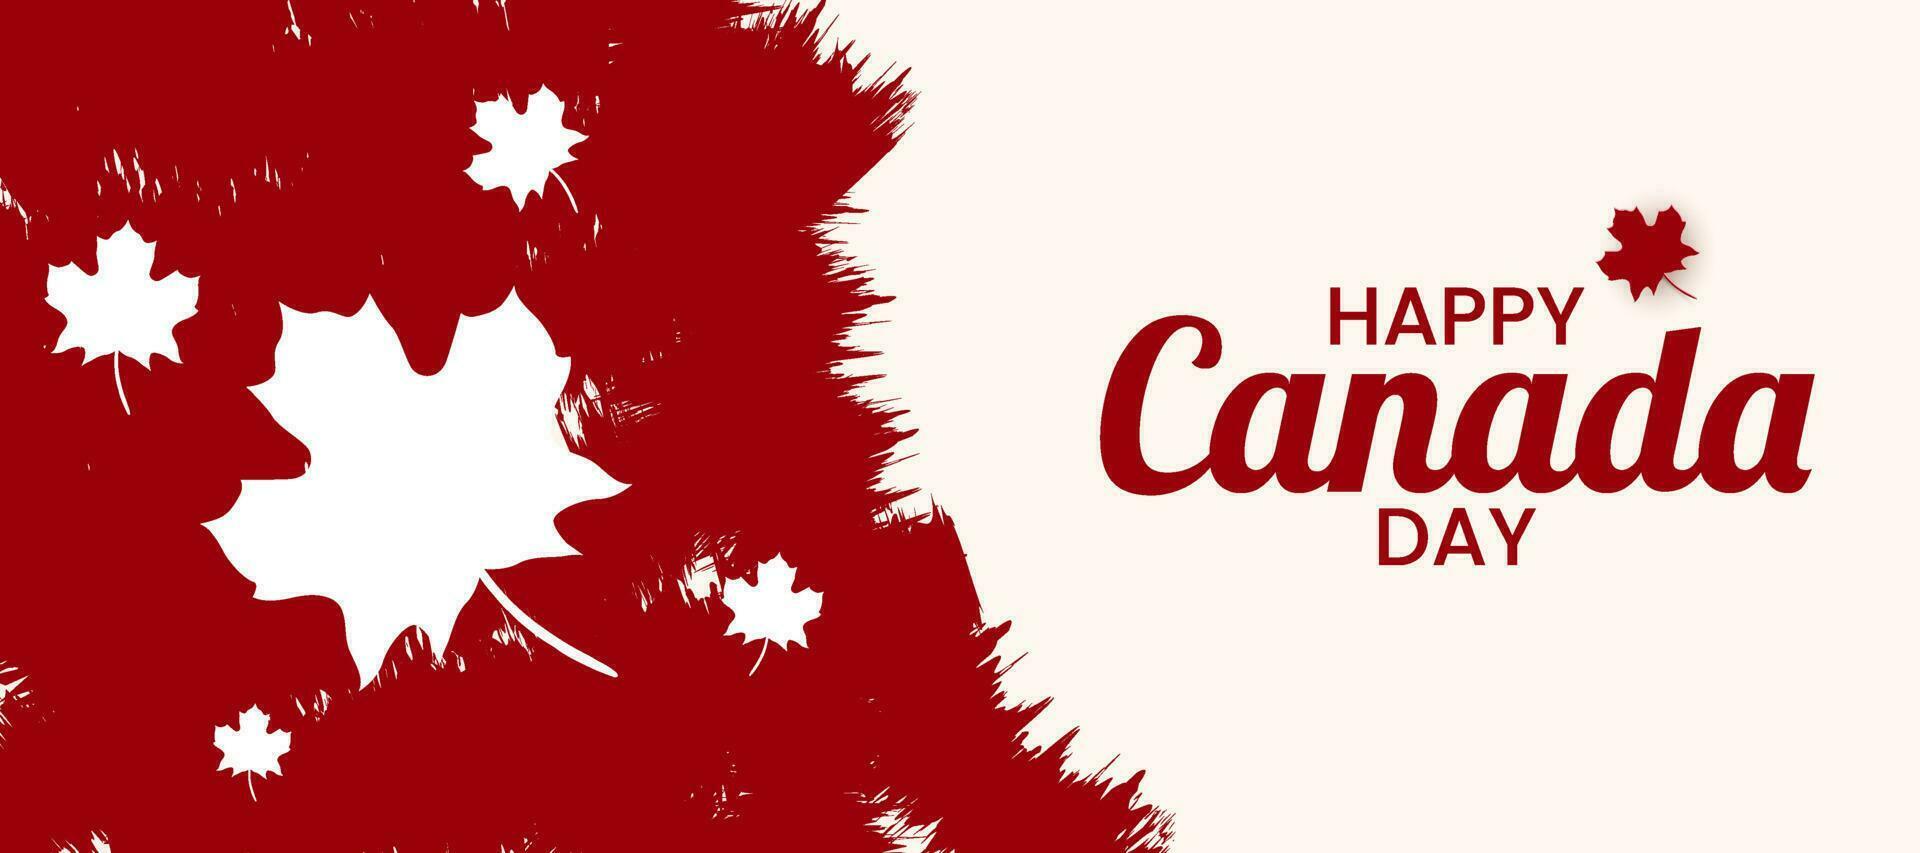 1er juillet 2020 content Canada journée bannière pour indépendance journée Contexte avec rouge érable. vecteur illustration salutation carte. Canada vacances concept conception. rouge blanc thème avec érable feuille.